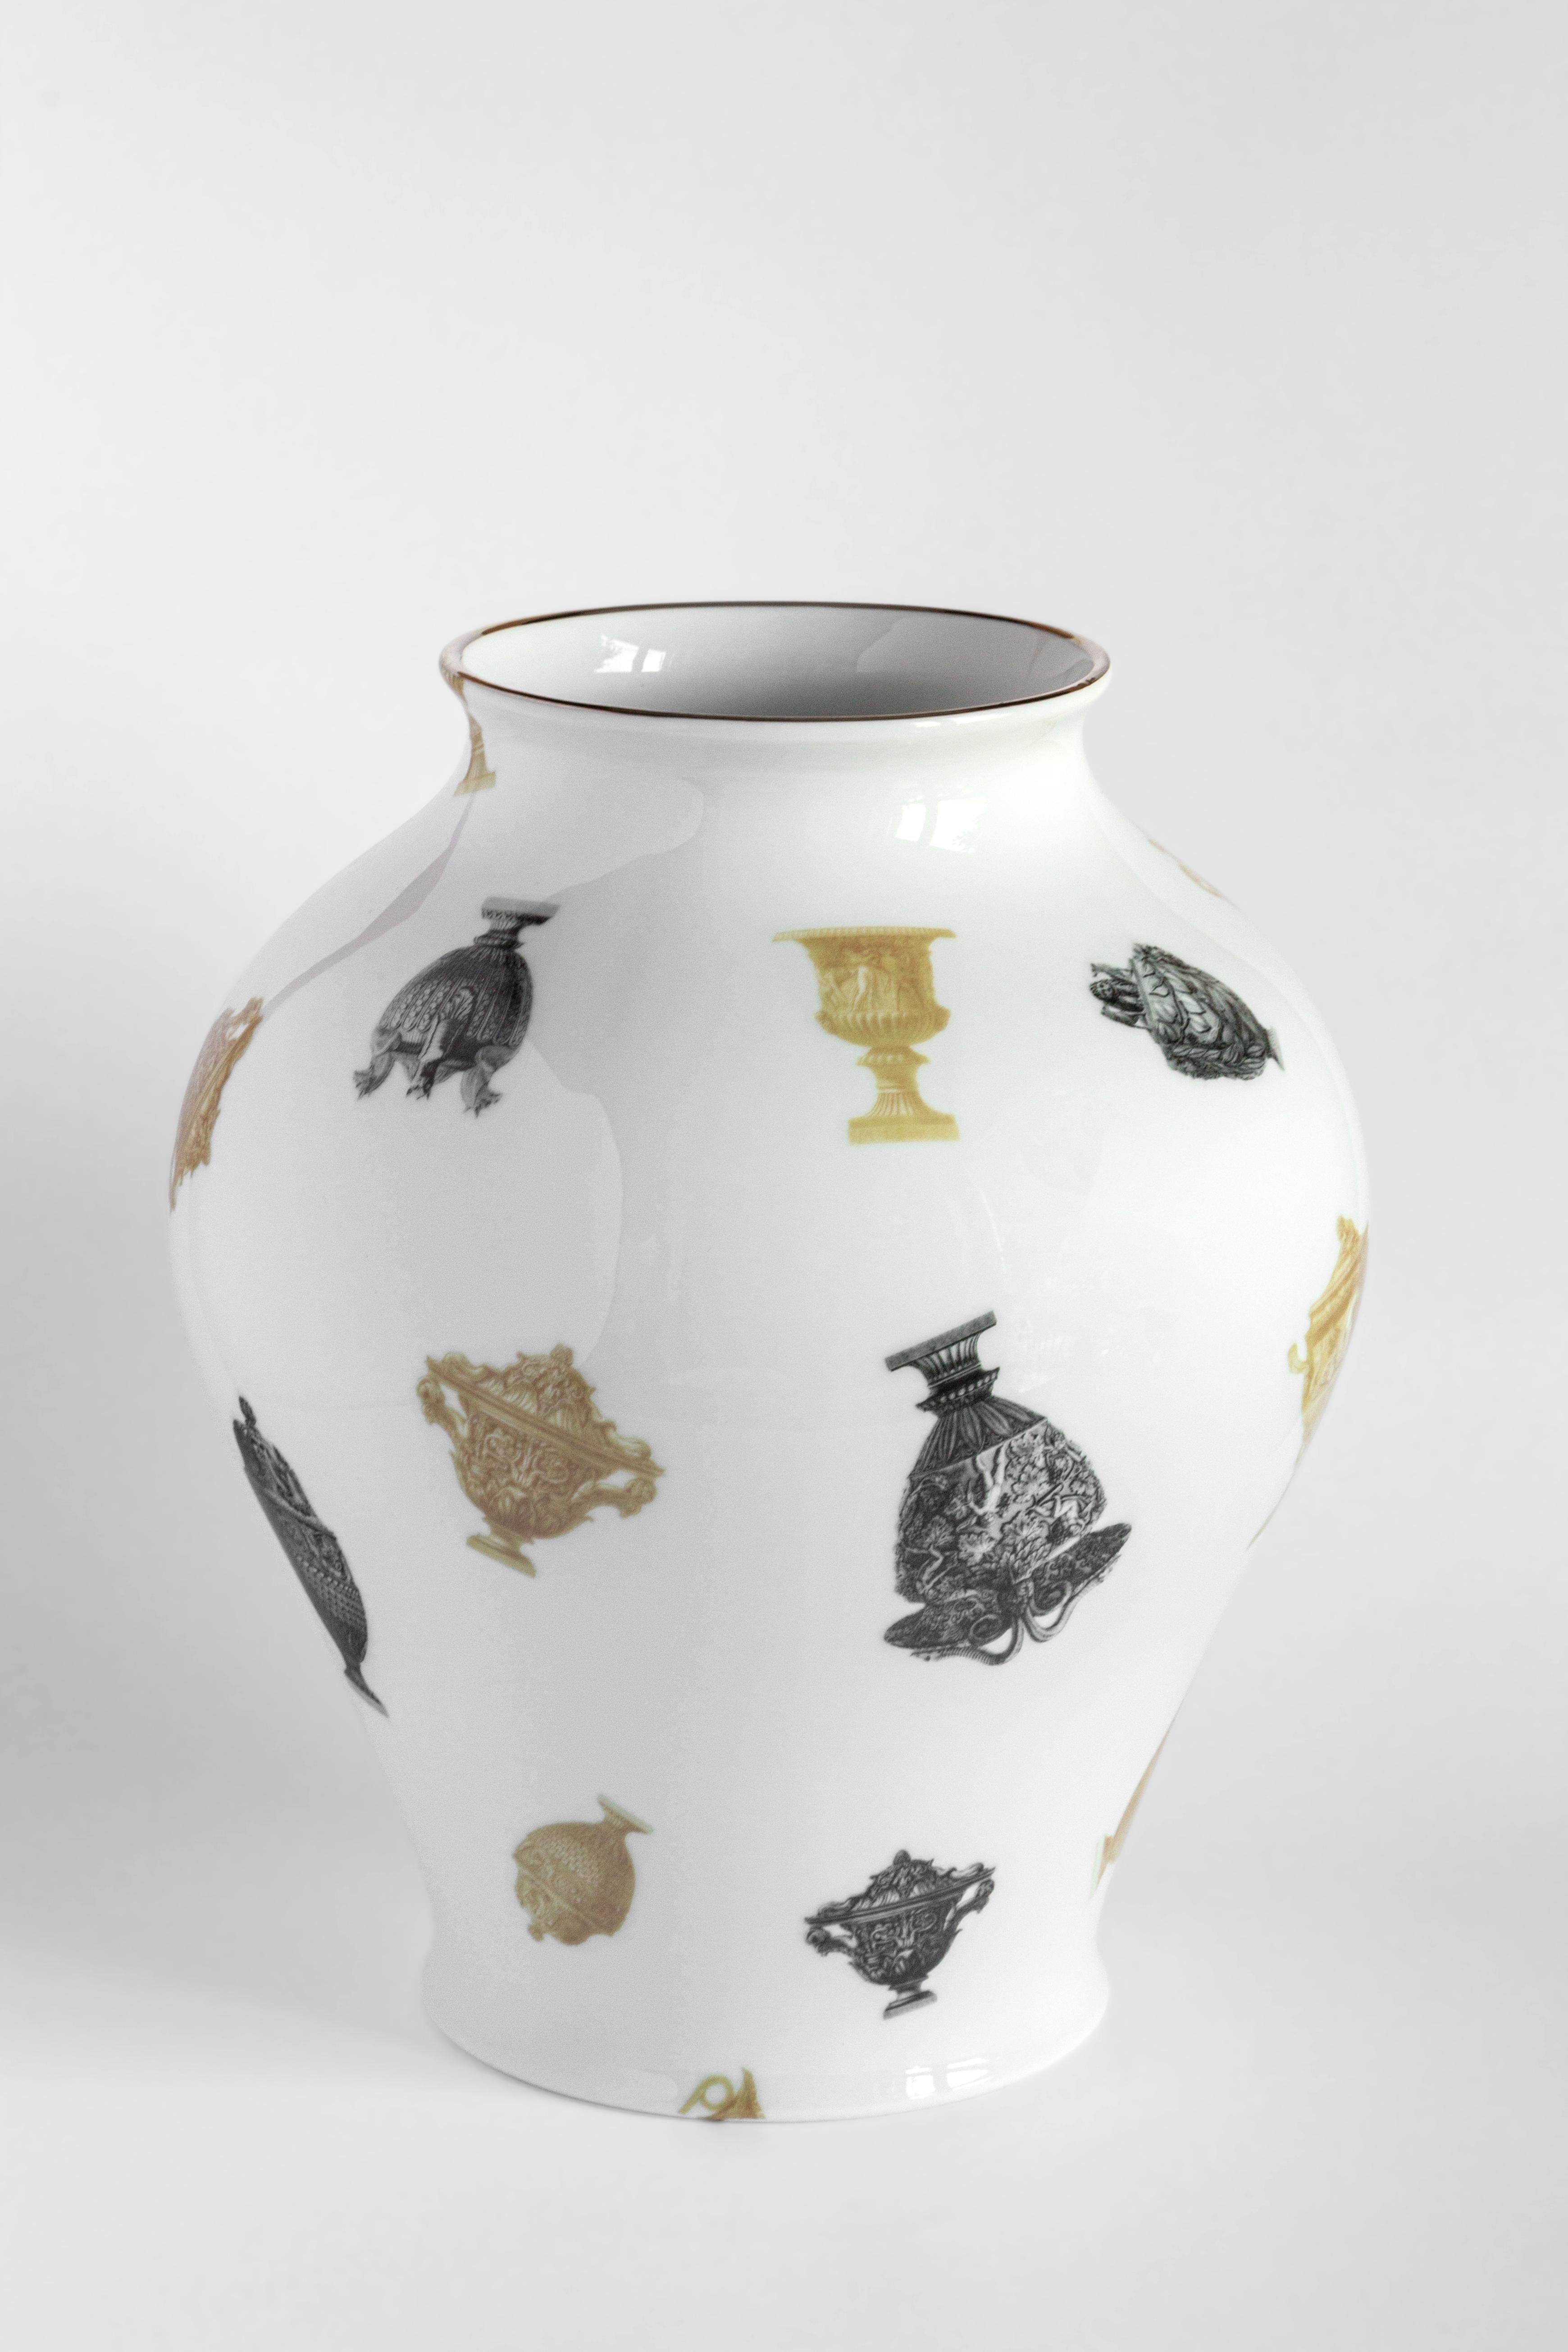 Le design classique de ce vase en porcelaine revient à la vie avec des décorations rétro à saveur contemporaine. Fabriquée à la main en porcelaine, la pièce célèbre la ville éternelle à travers une image méticuleuse et exquise de multiples vases